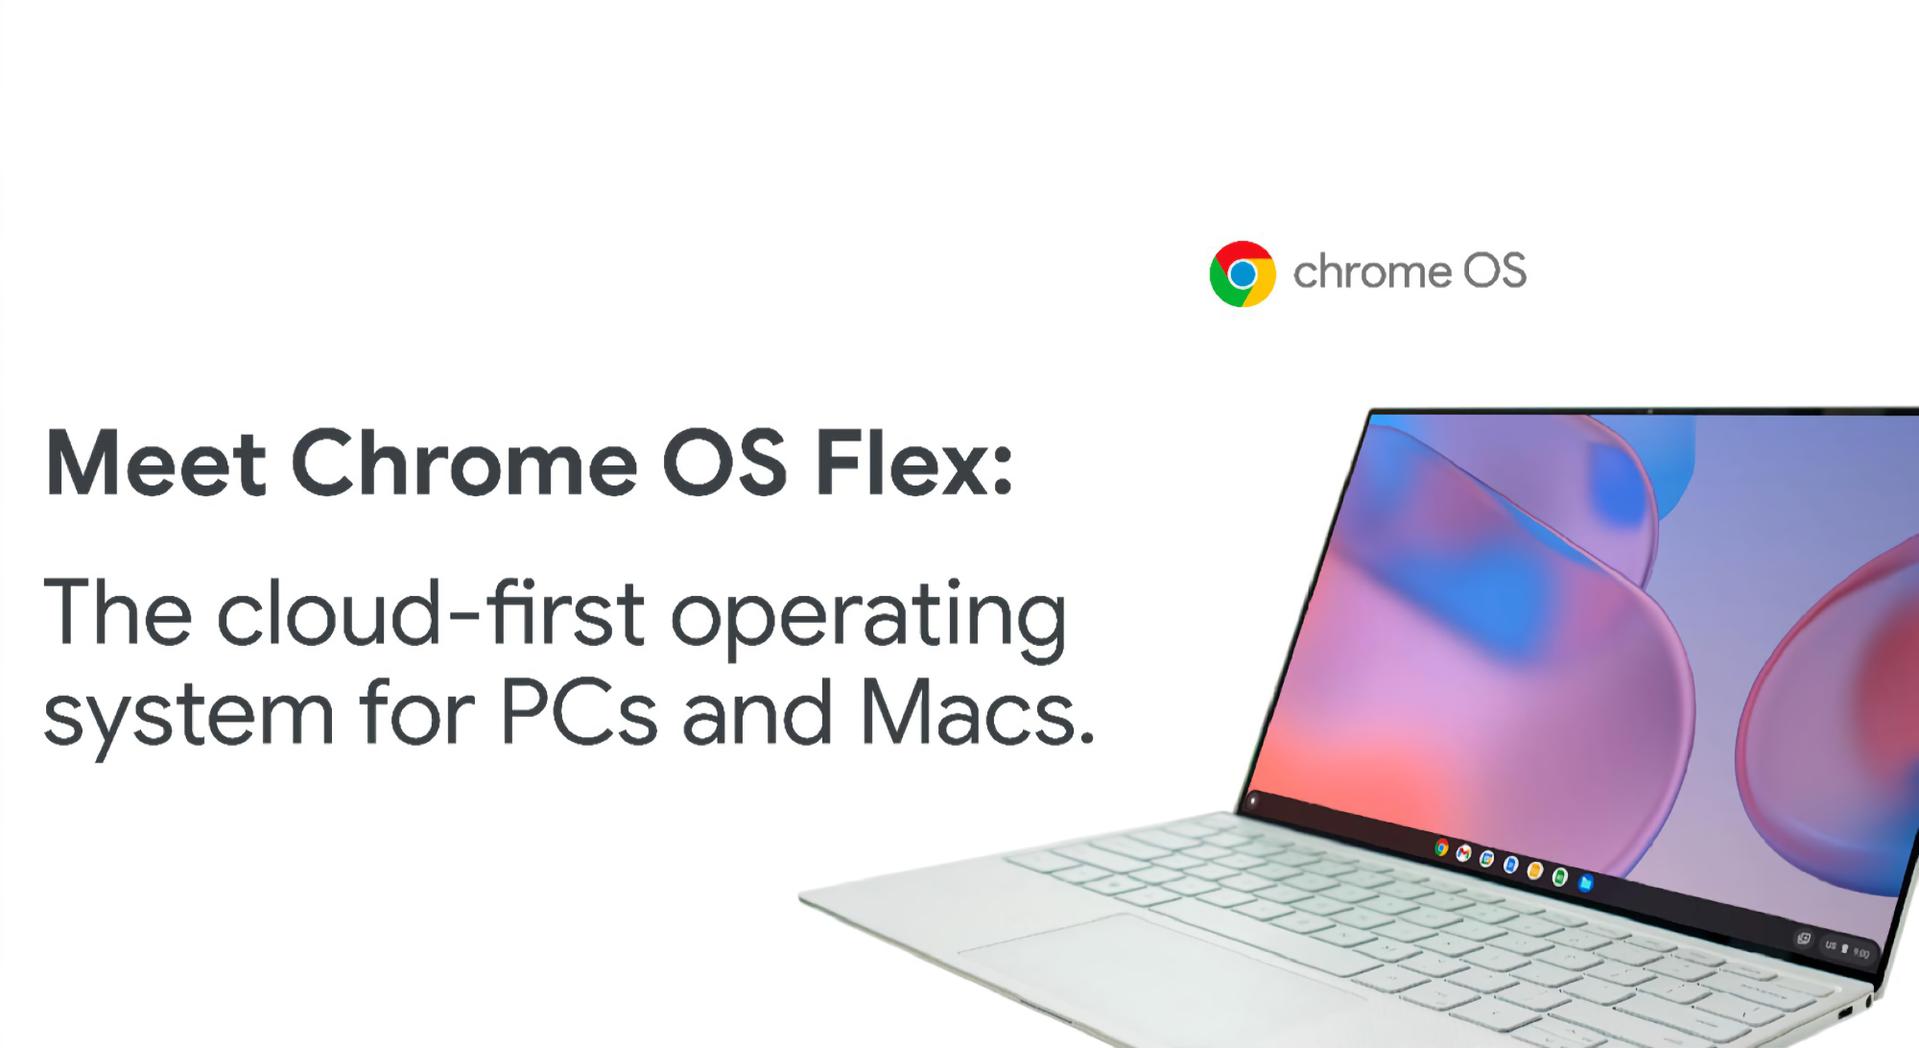 Chmurowy system operacyjny Chrome OS Flex jest obecnie obsługiwany przez ponad 400 modeli komputerów, w tym ASUS, Acer, Dell, HP, Lenovo, LG i Apple